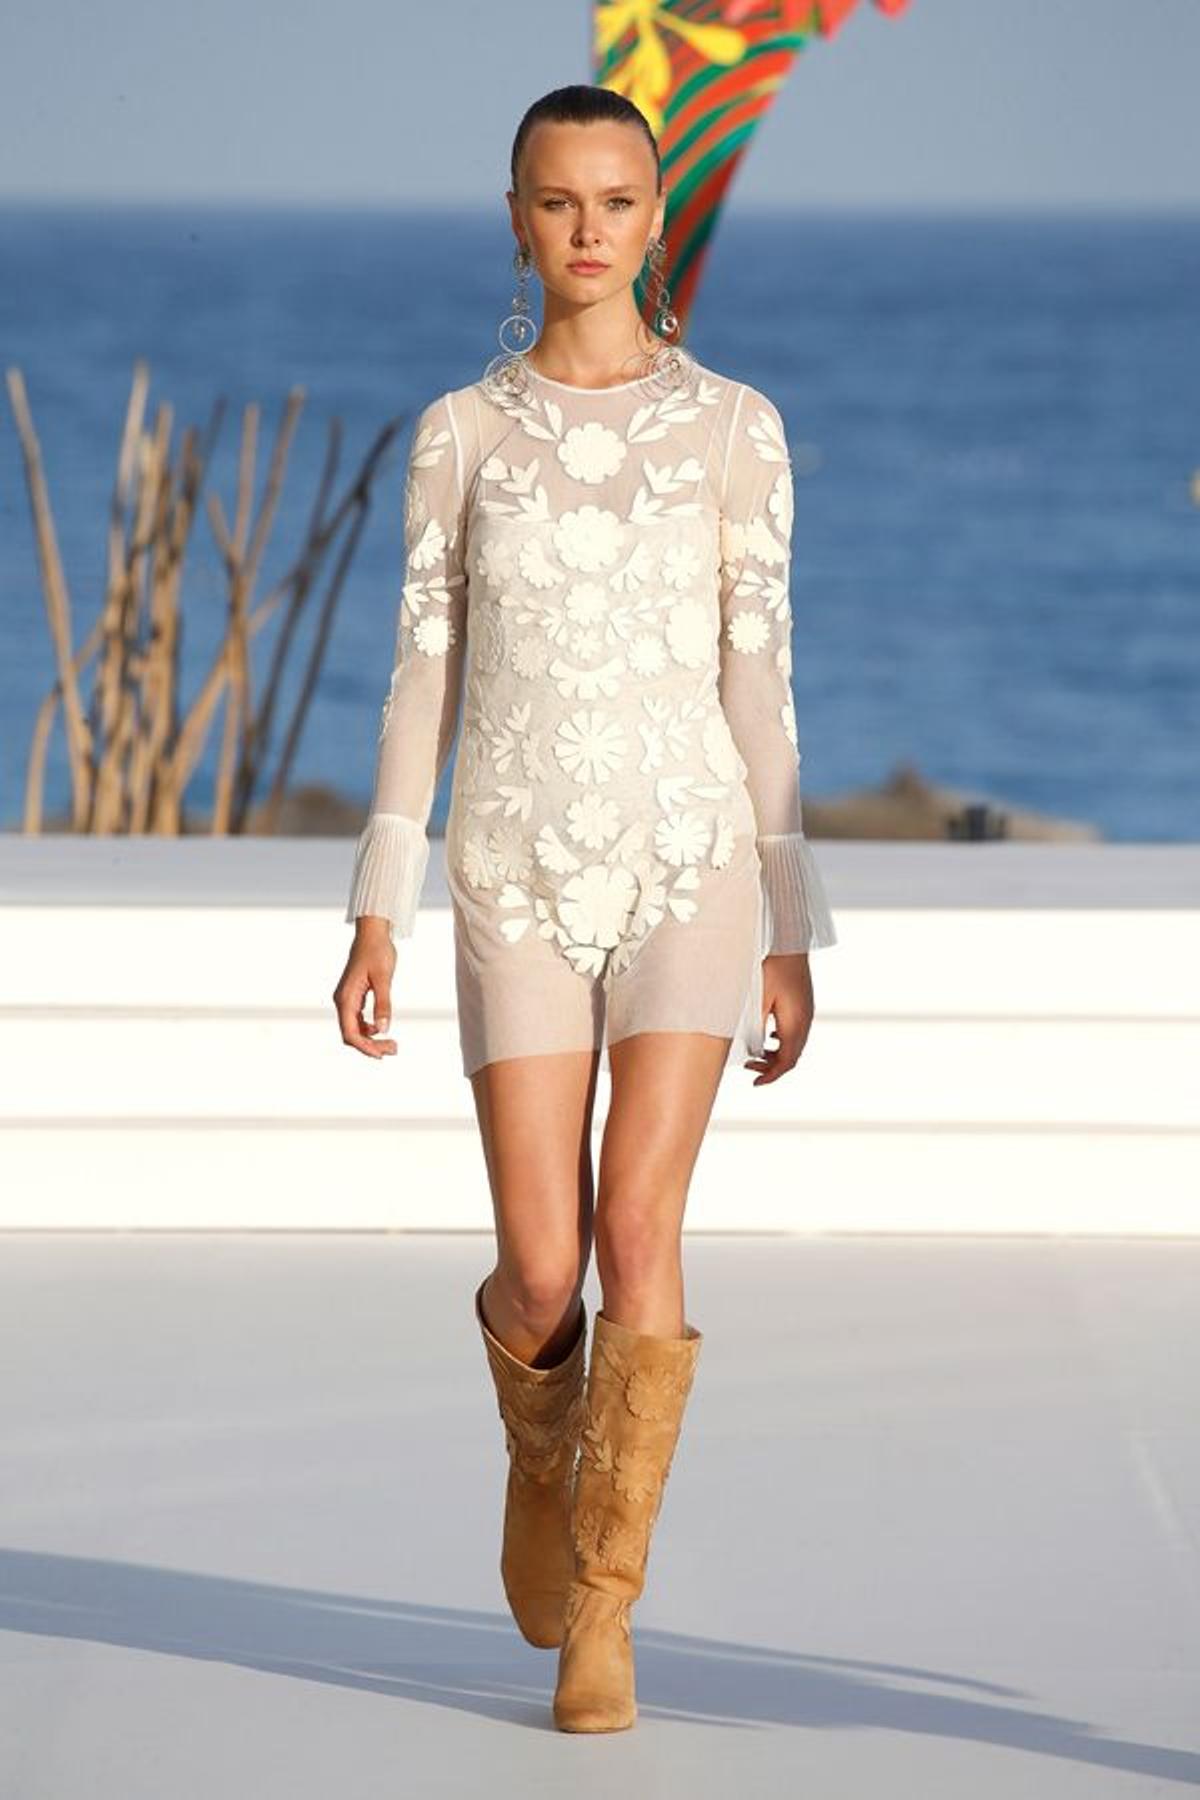 Mercedes Benz Fashion Weekend Ibiza: vestido con piezas de piel, de Teresa Helbig